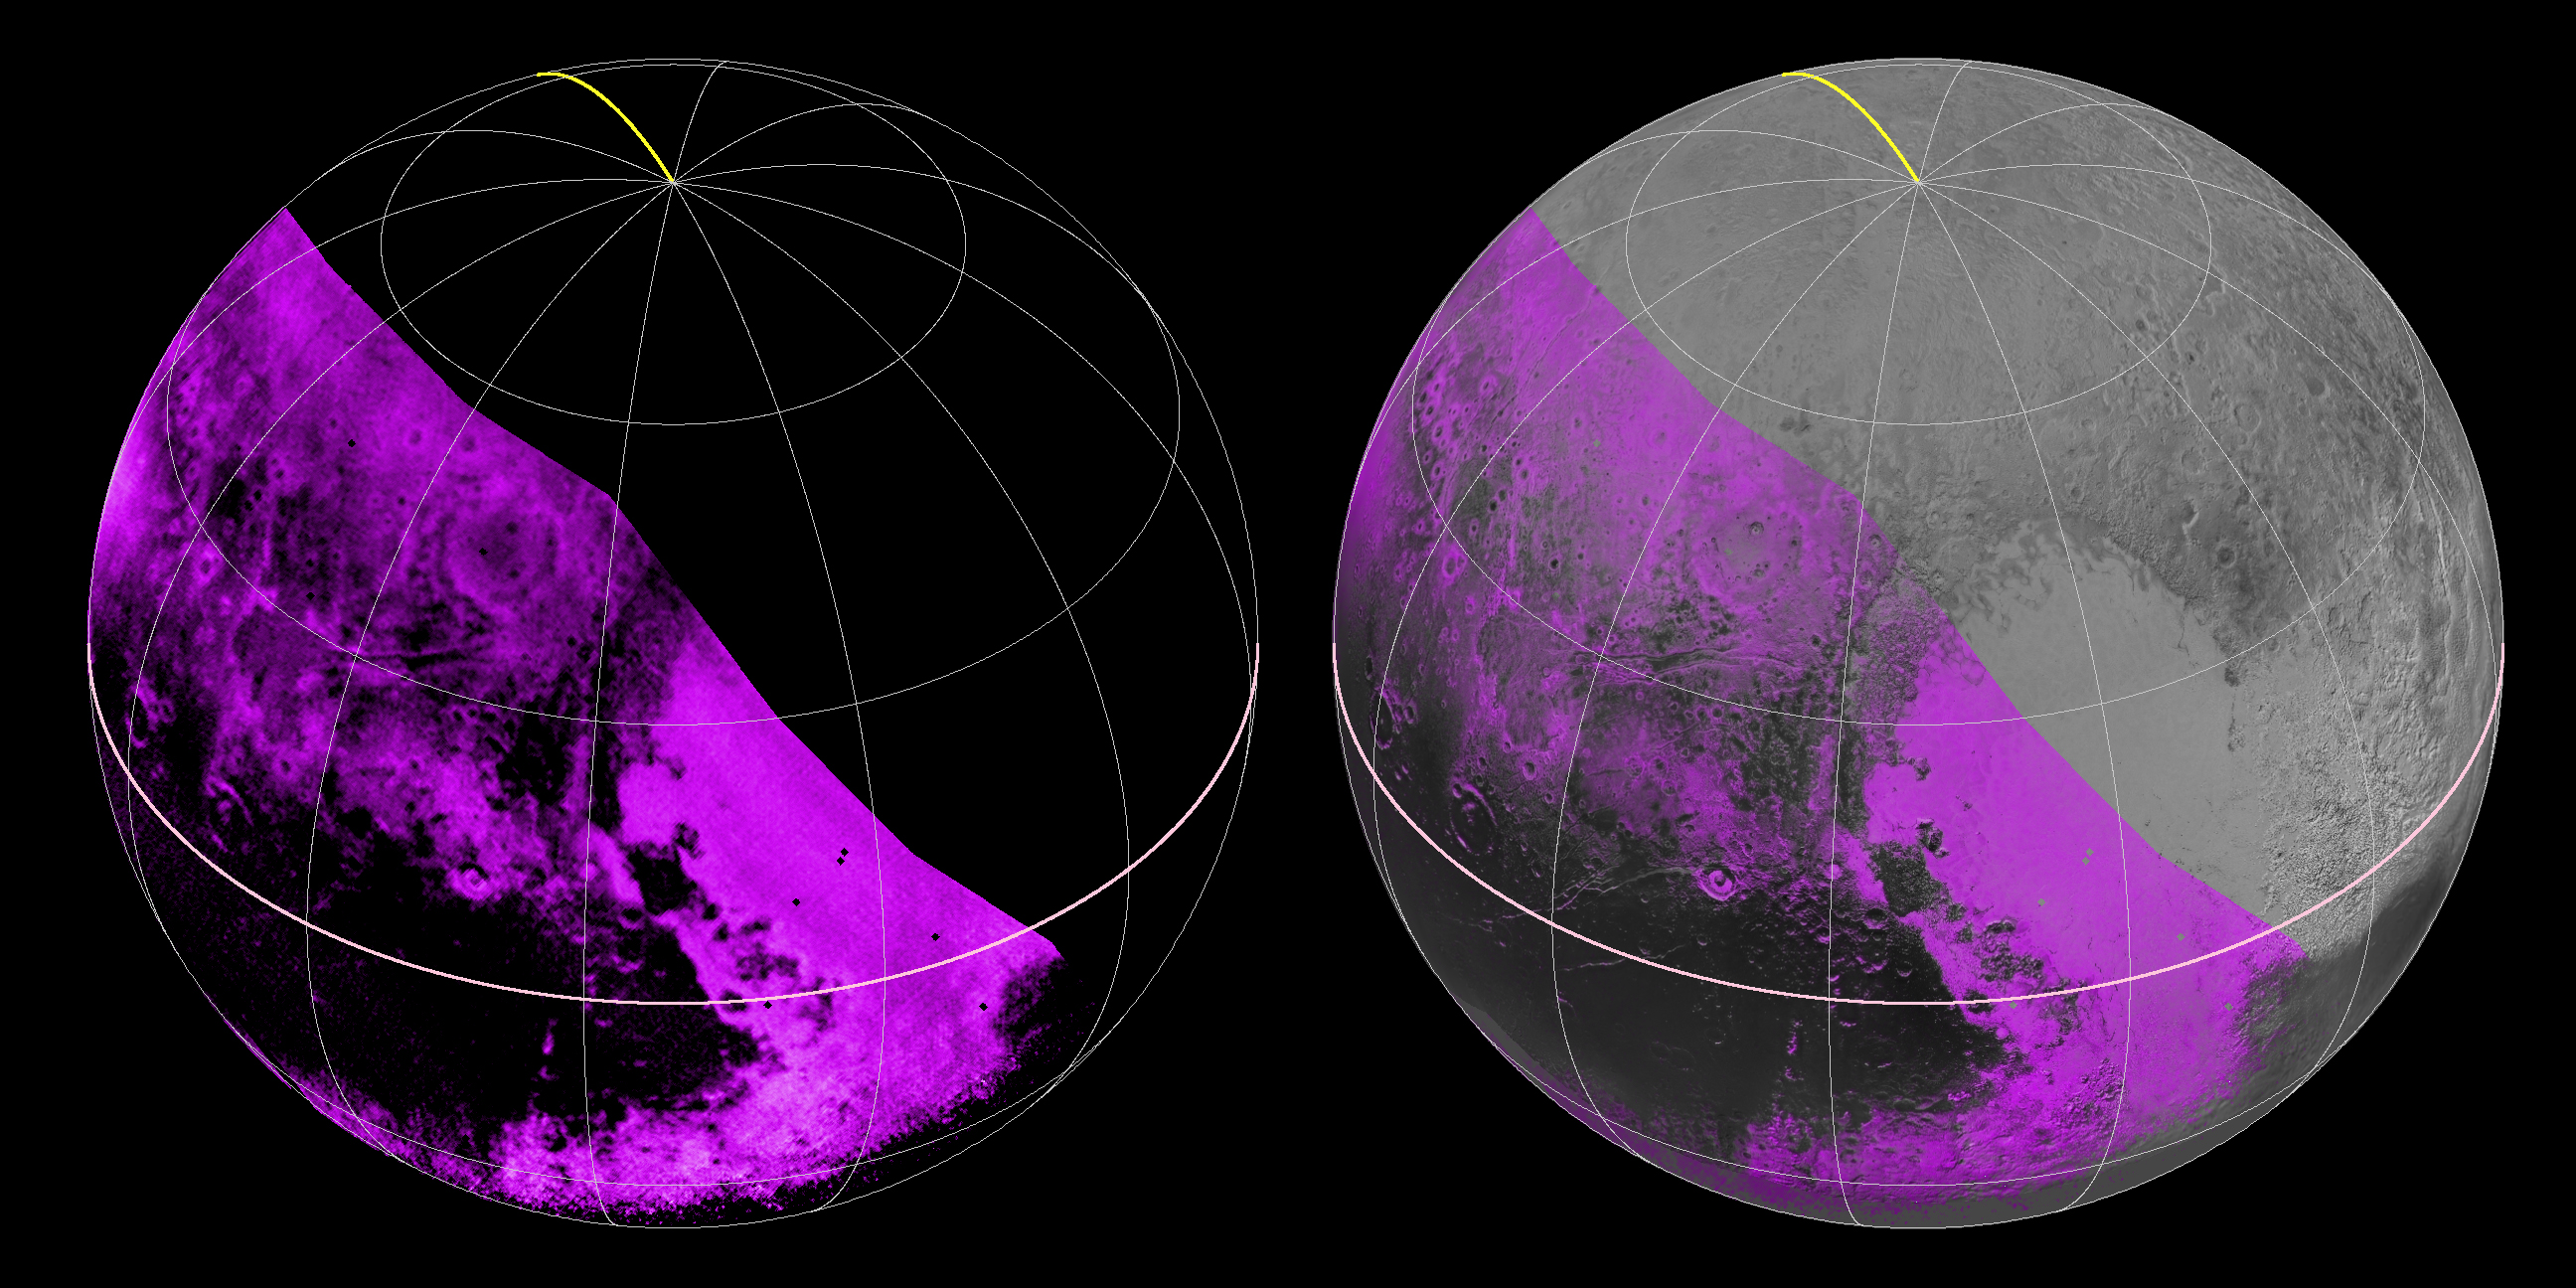 A sinistra le zone in rosa sono quelle dove è stata rilevata la presenza di metano ghiacciato. Più il rosa è acceso maggiore è la concentrazione. Le zone nere invece rivelano una totale assenza di metano. A destra l'immagine spettrografica è stata montata su una foto di Plutone (Credits: NASA/JHUAPL/SWRI)